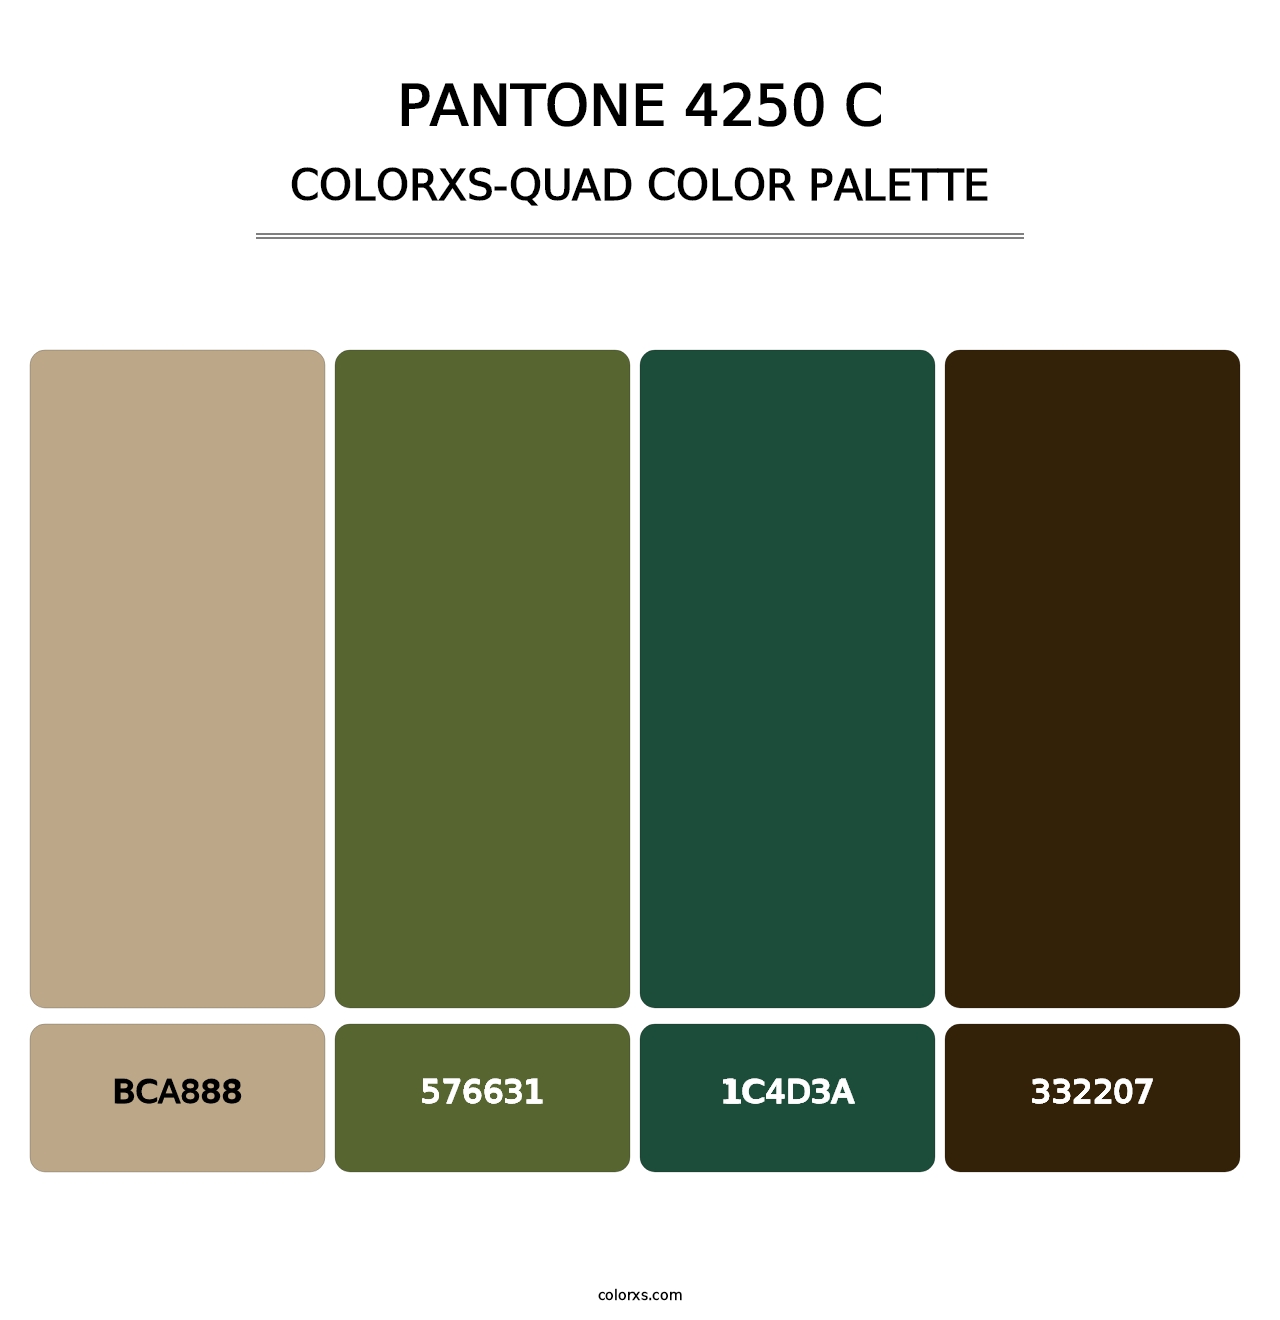 PANTONE 4250 C - Colorxs Quad Palette